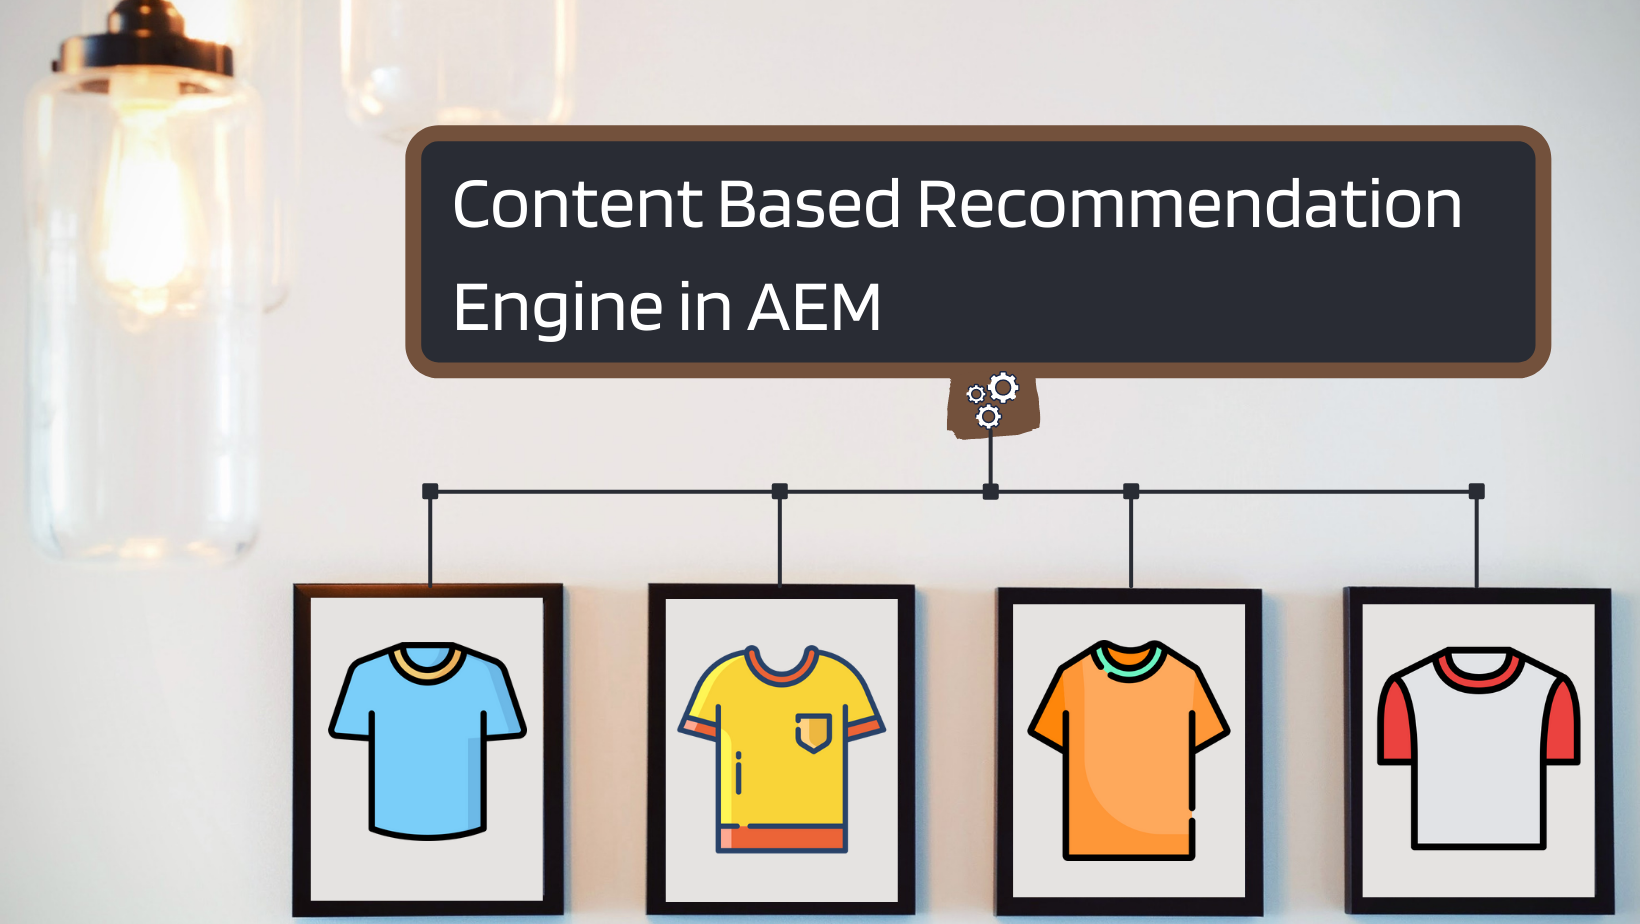 AEM Recommendation Generator